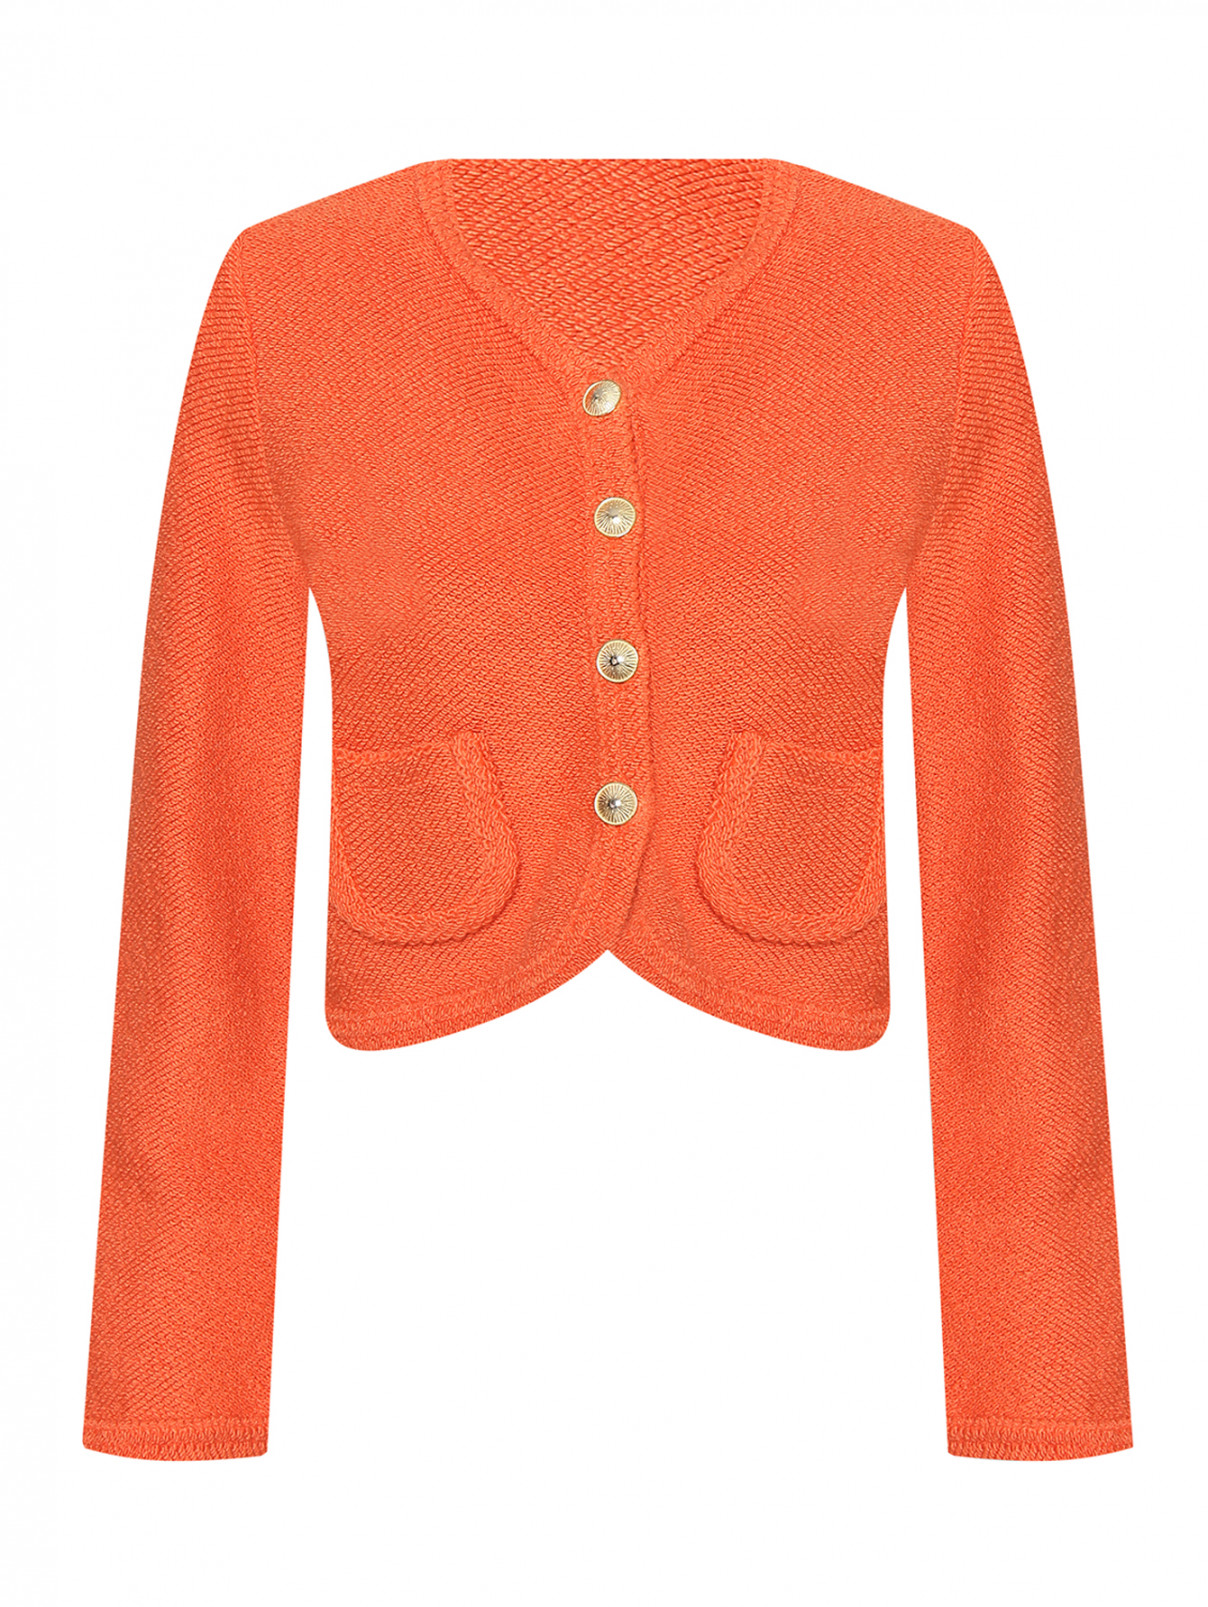 Жакет с накладными карманами Dorothee Schumacher  –  Общий вид  – Цвет:  Оранжевый